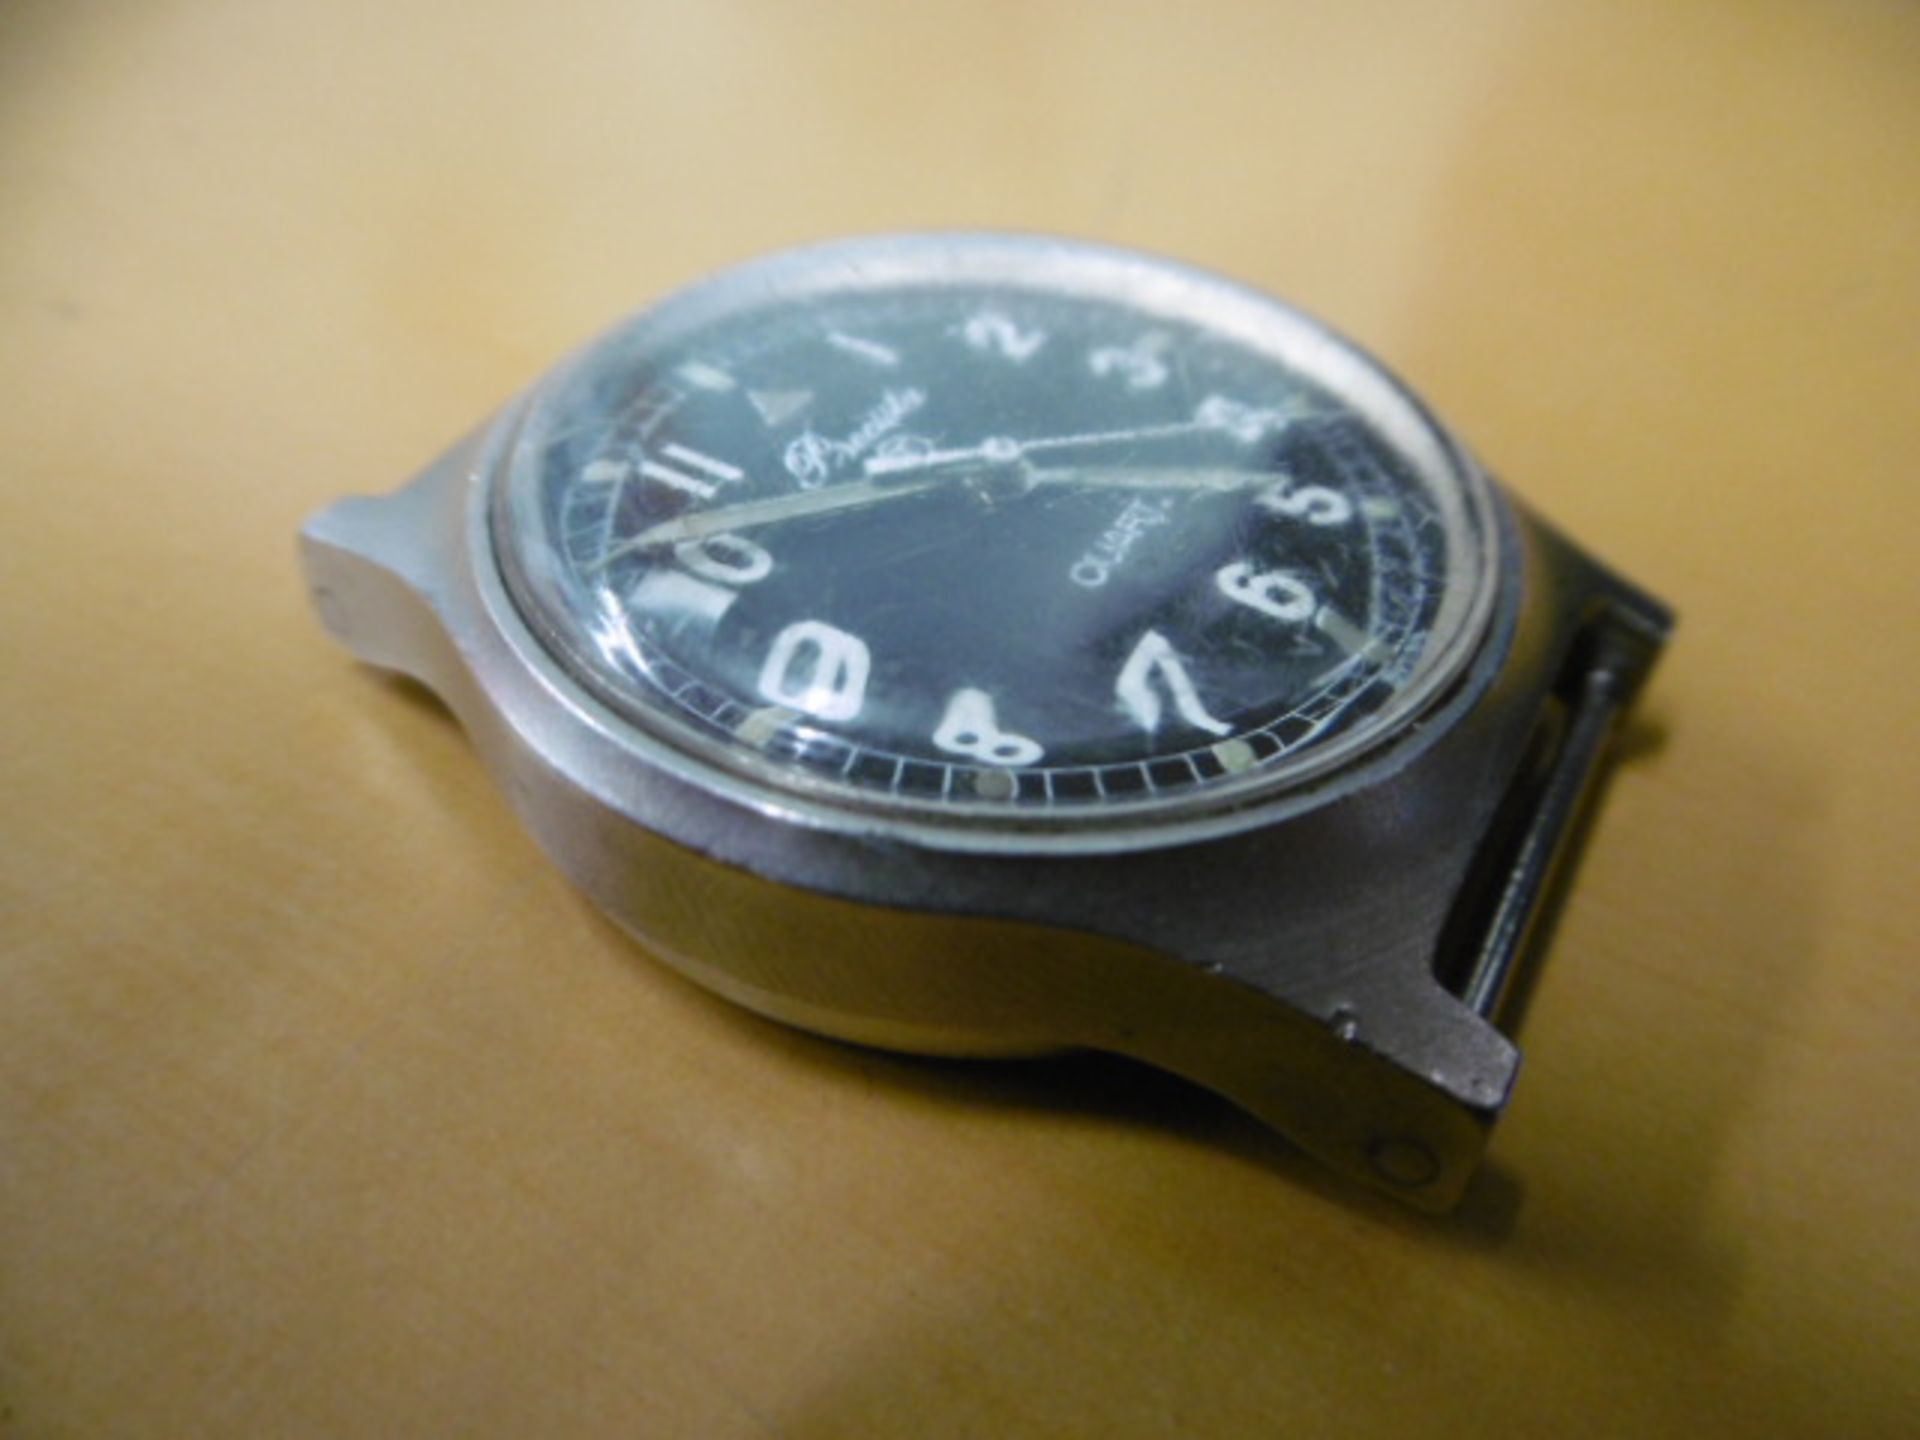 2 x Precista quartz wrist watches - Falklands Issue - Image 4 of 9